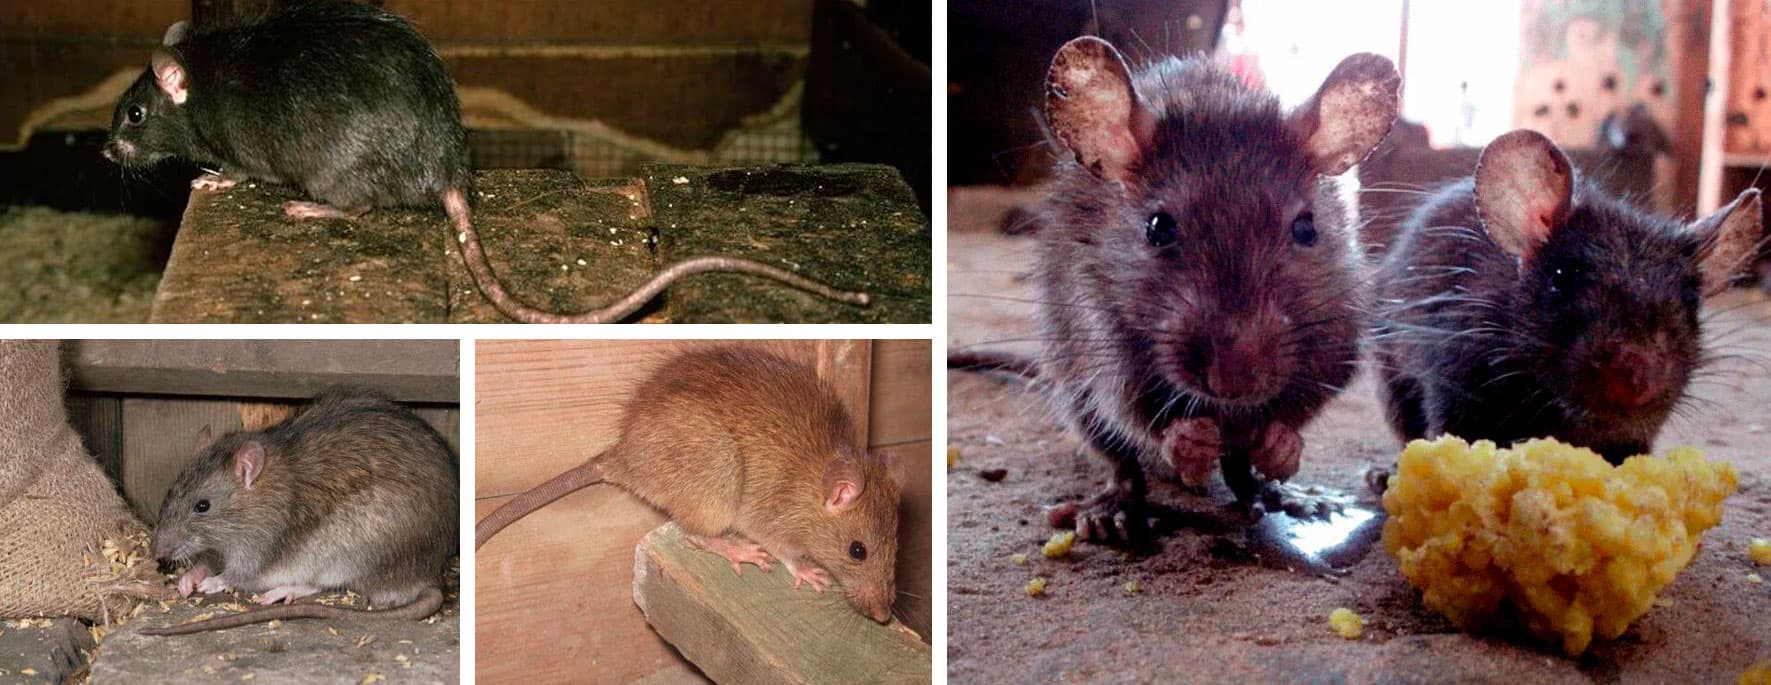 Уничтожение крыс и мышей в домах, квартирах и предприятиях Москвы и области